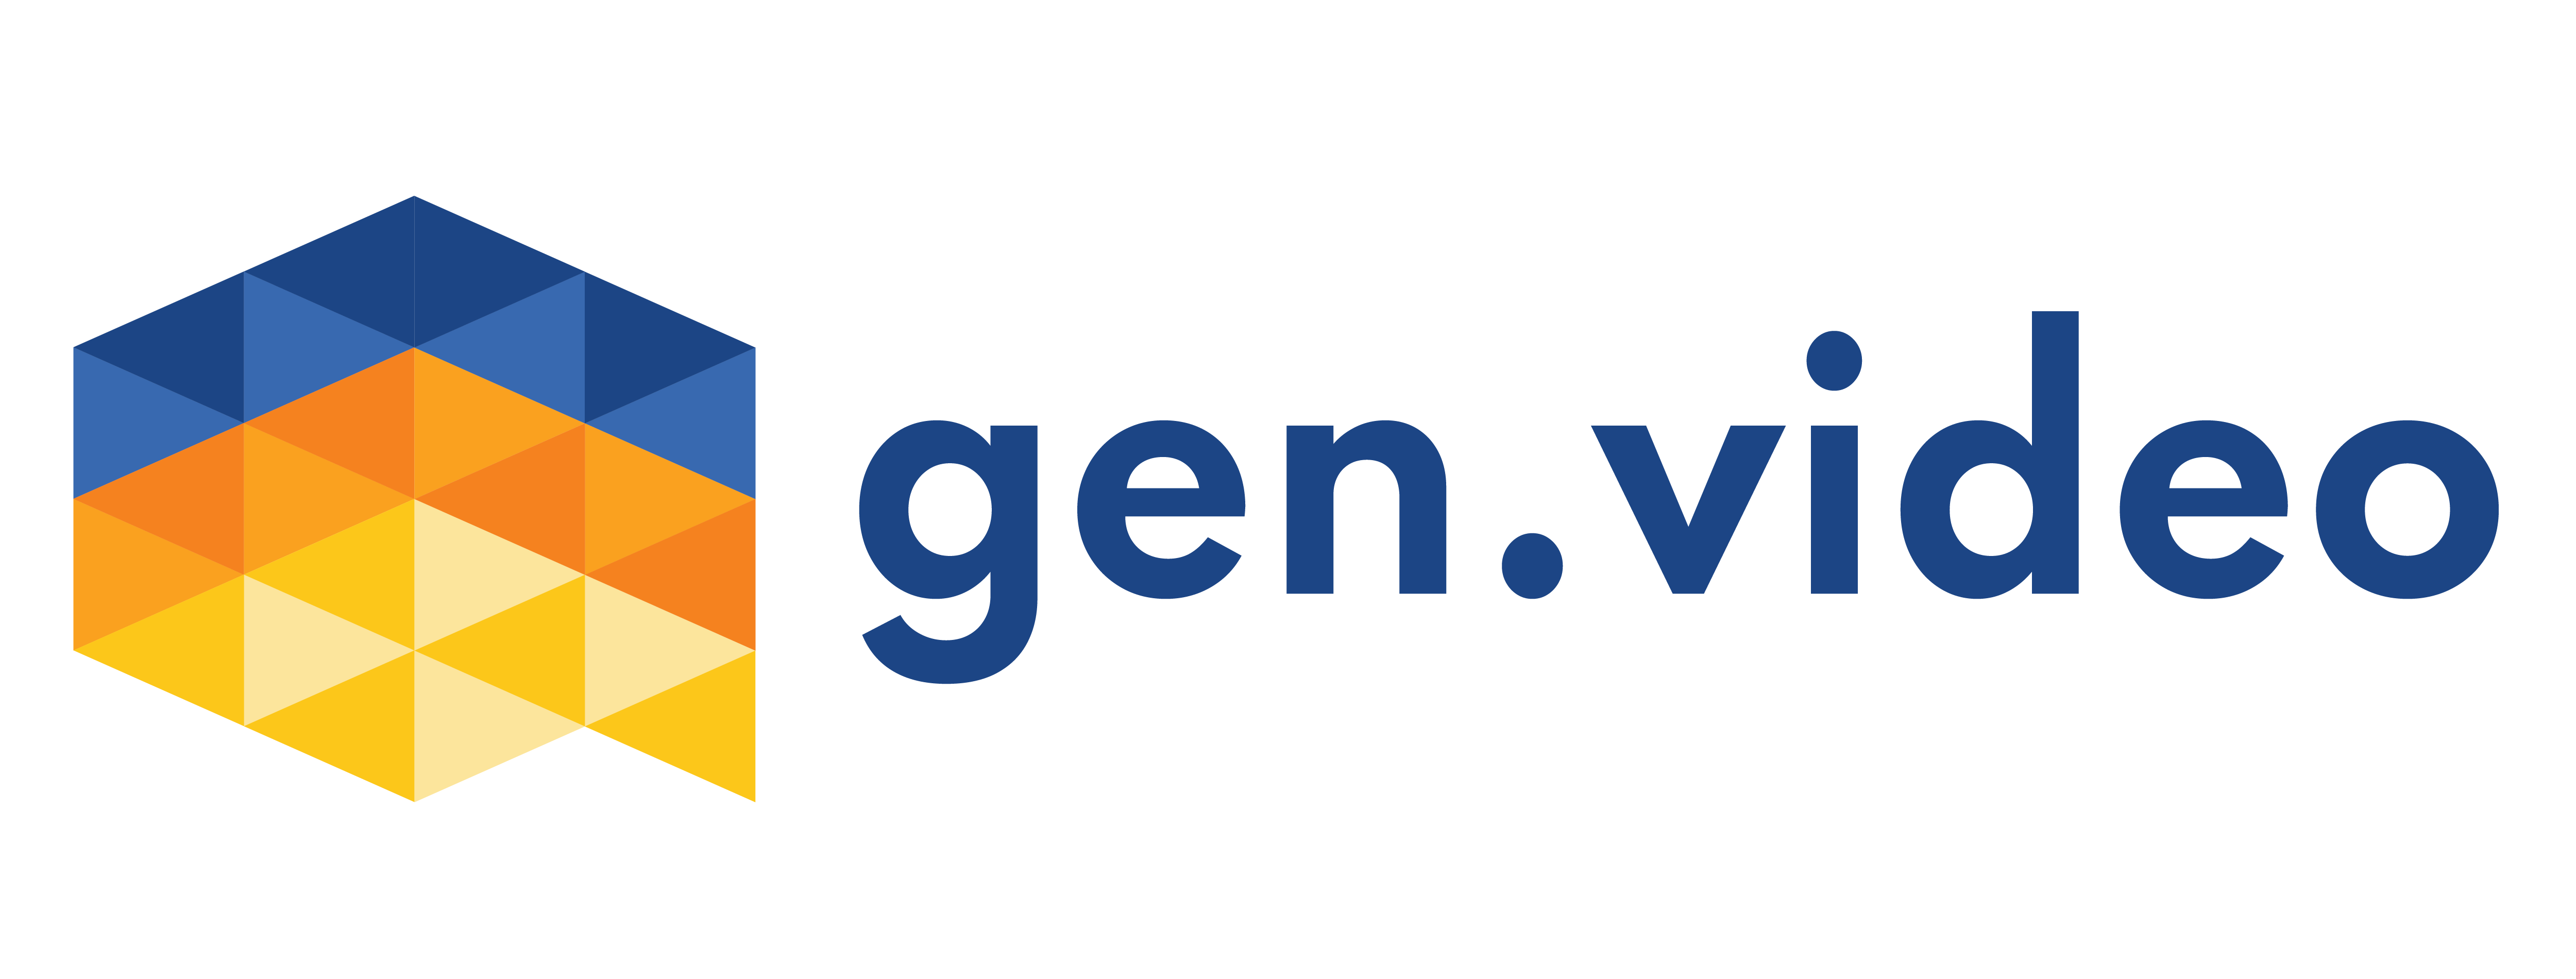 Gen.video